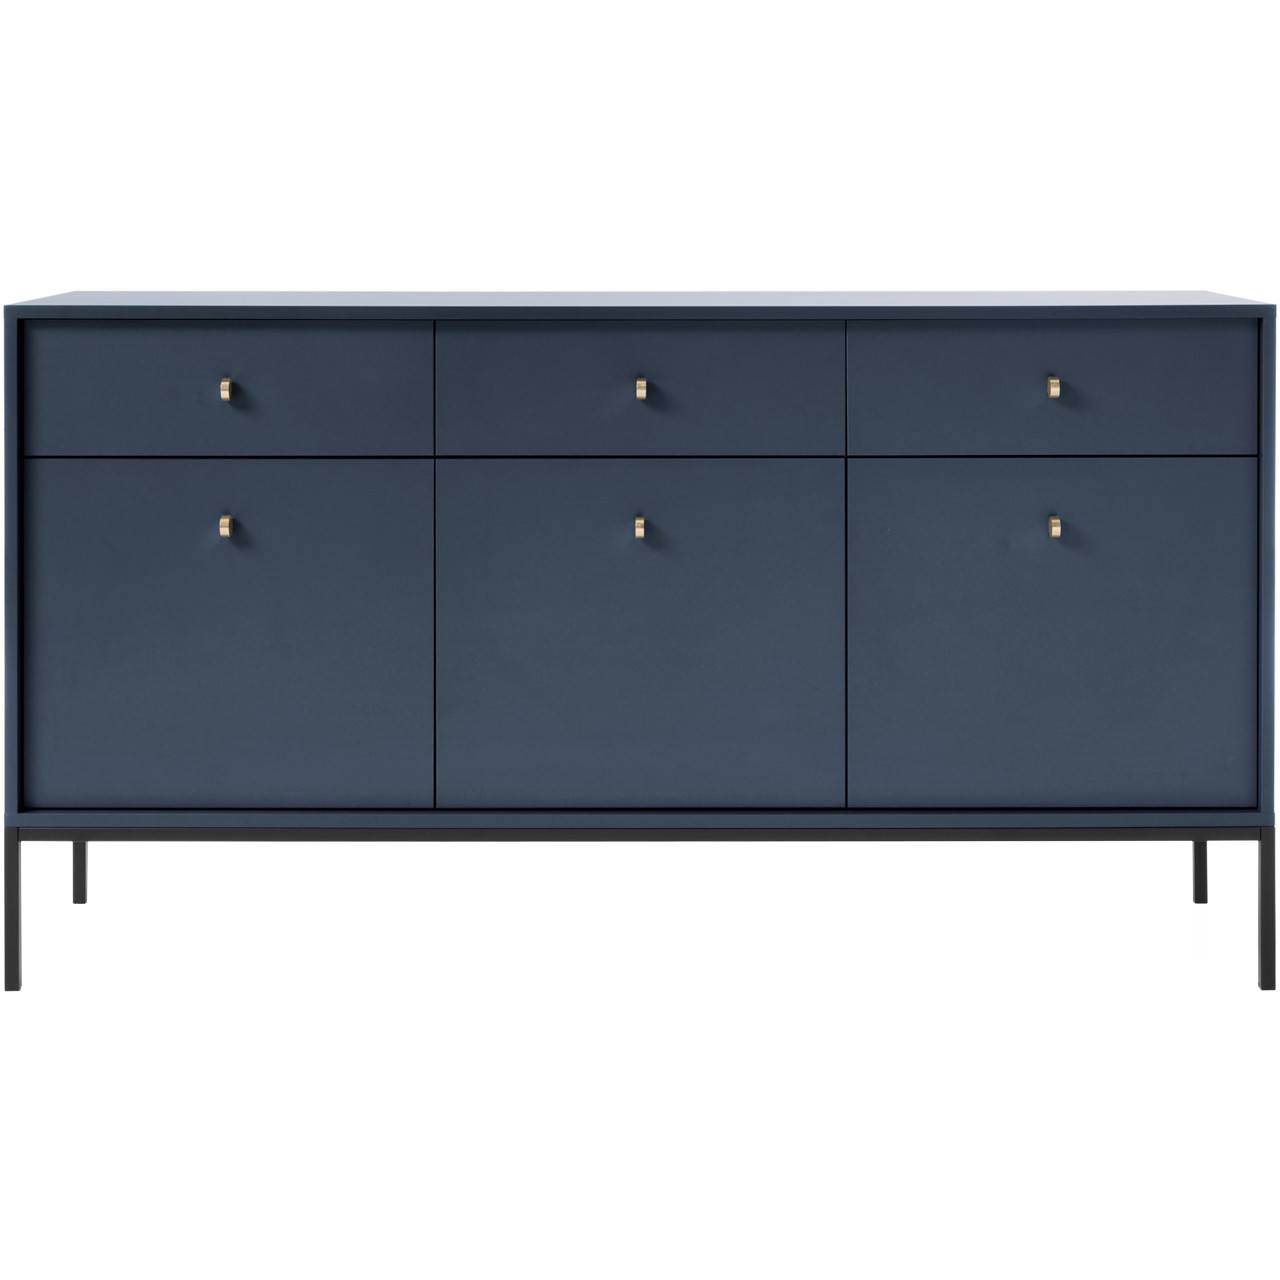 Storage cabinet MONO 05 navy blue